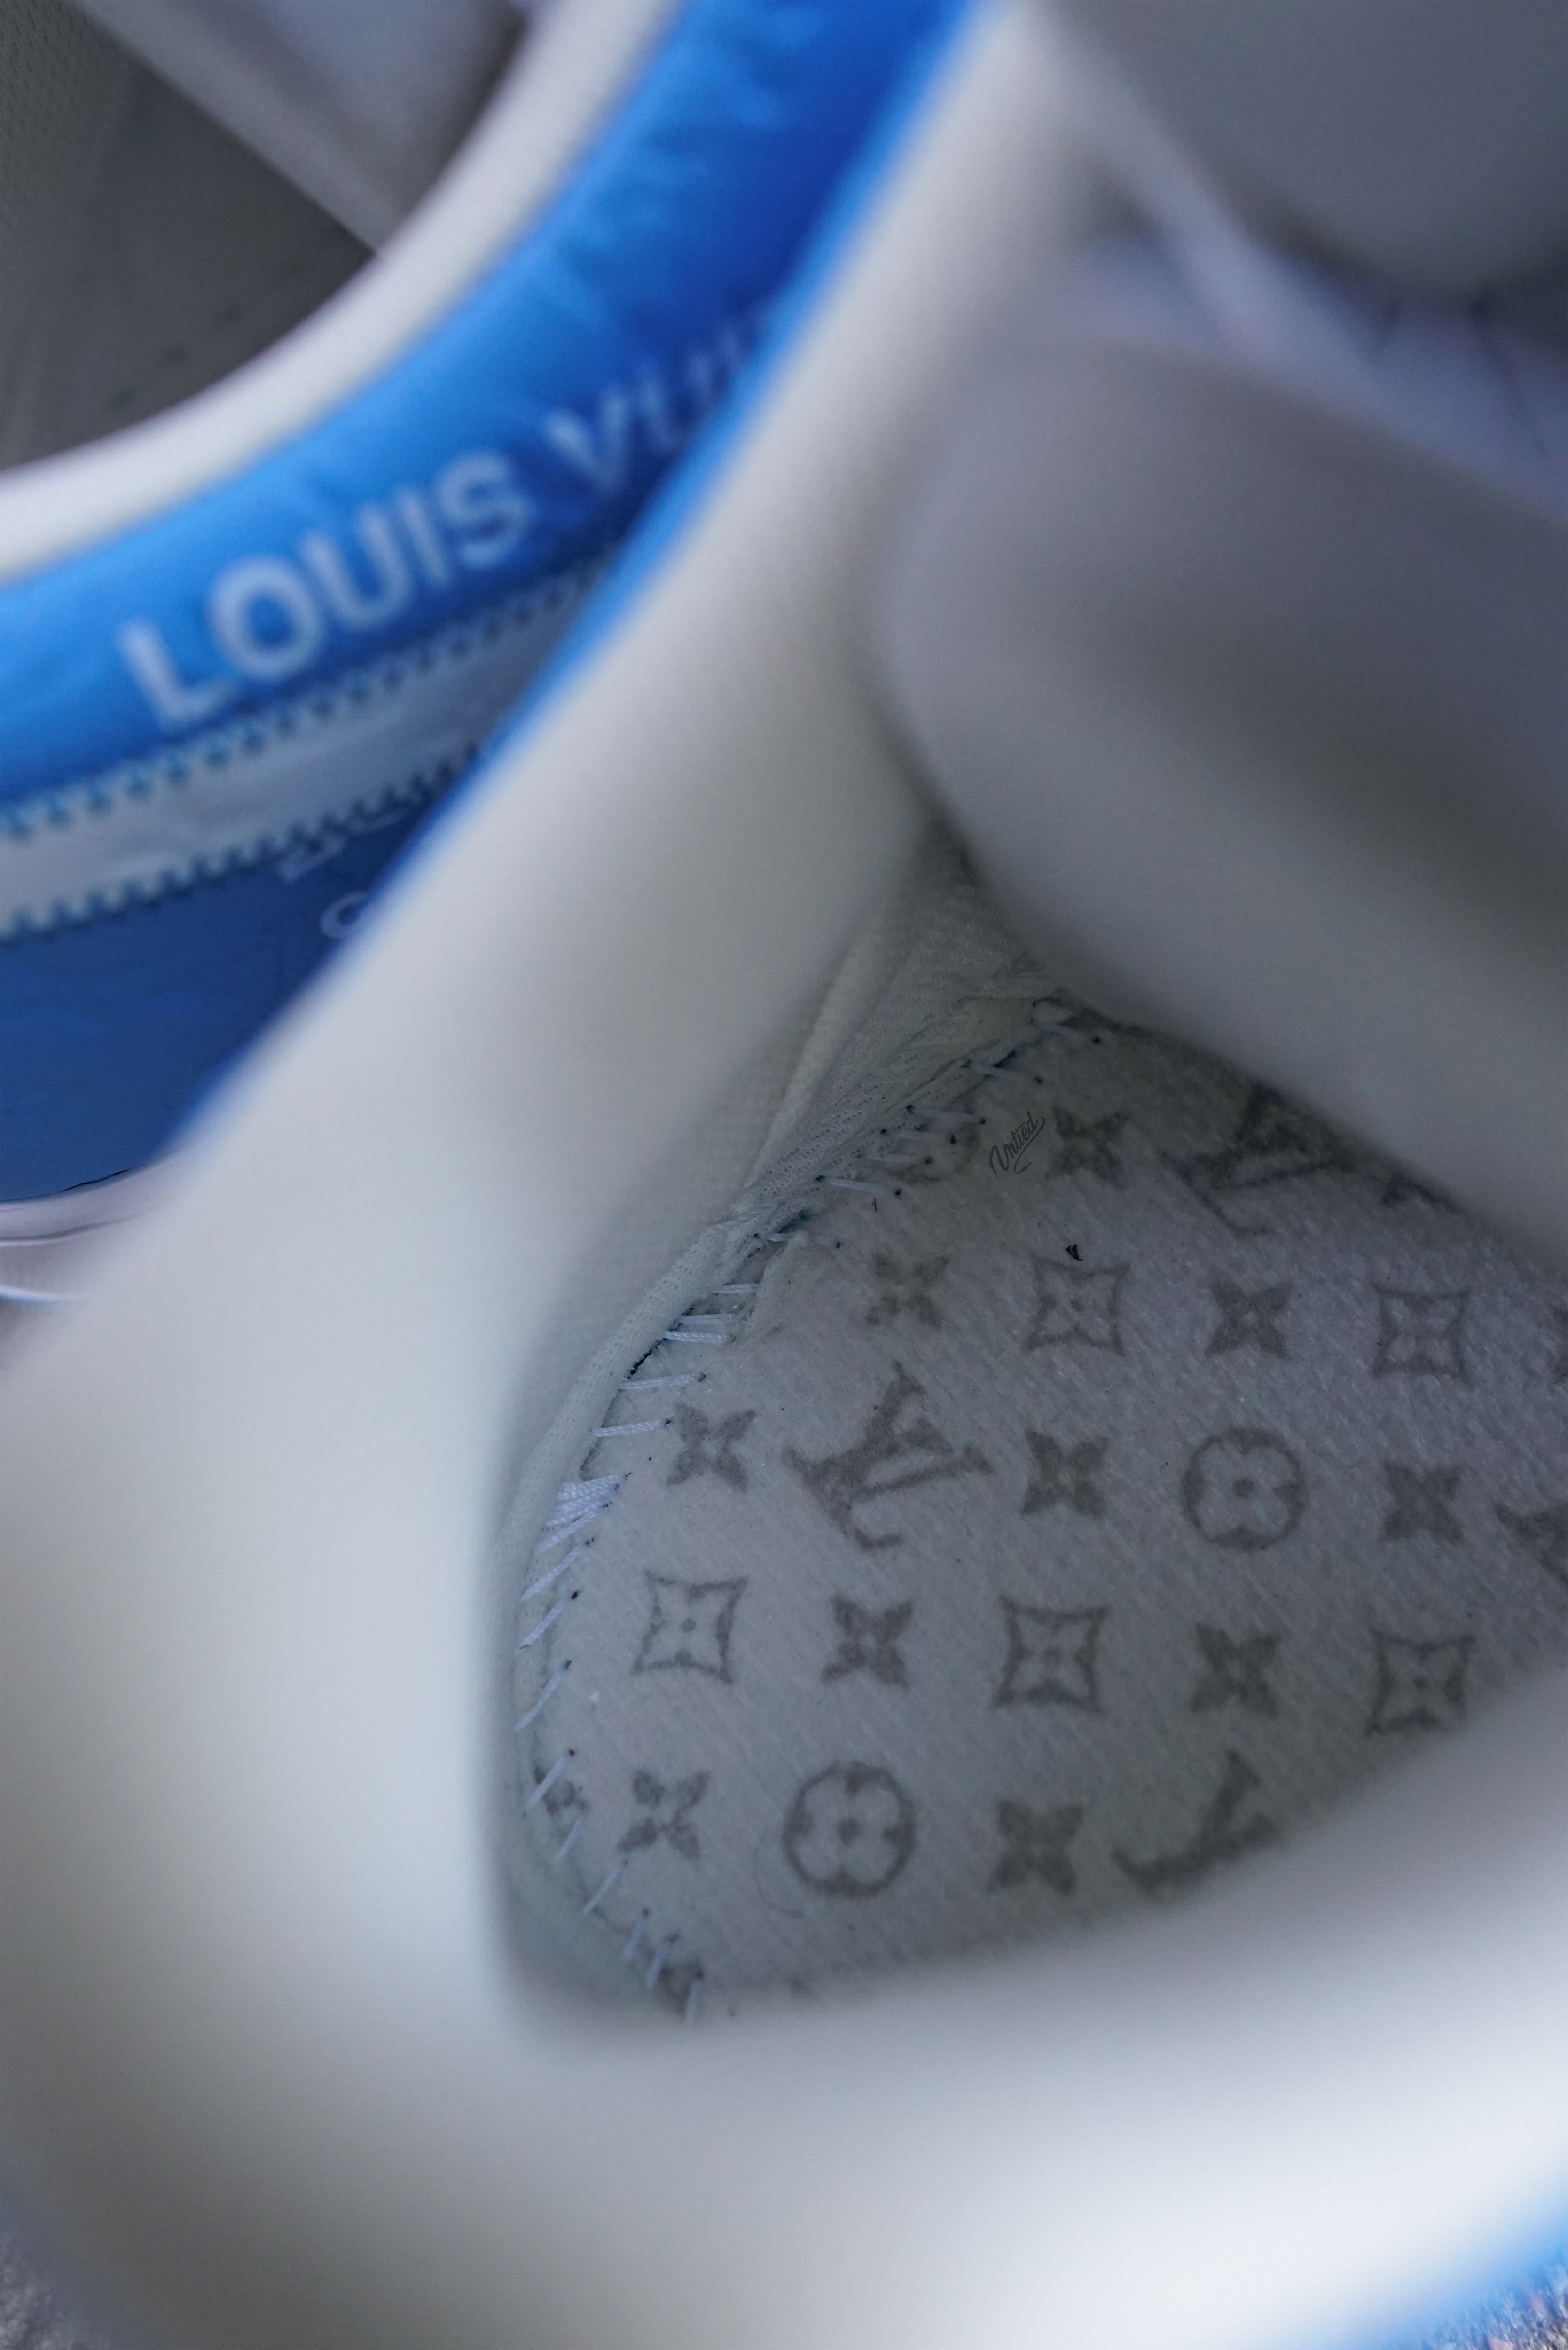 Louis Vuitton Nike Air Force One Auction Raises $25.3 Million – Robb Report